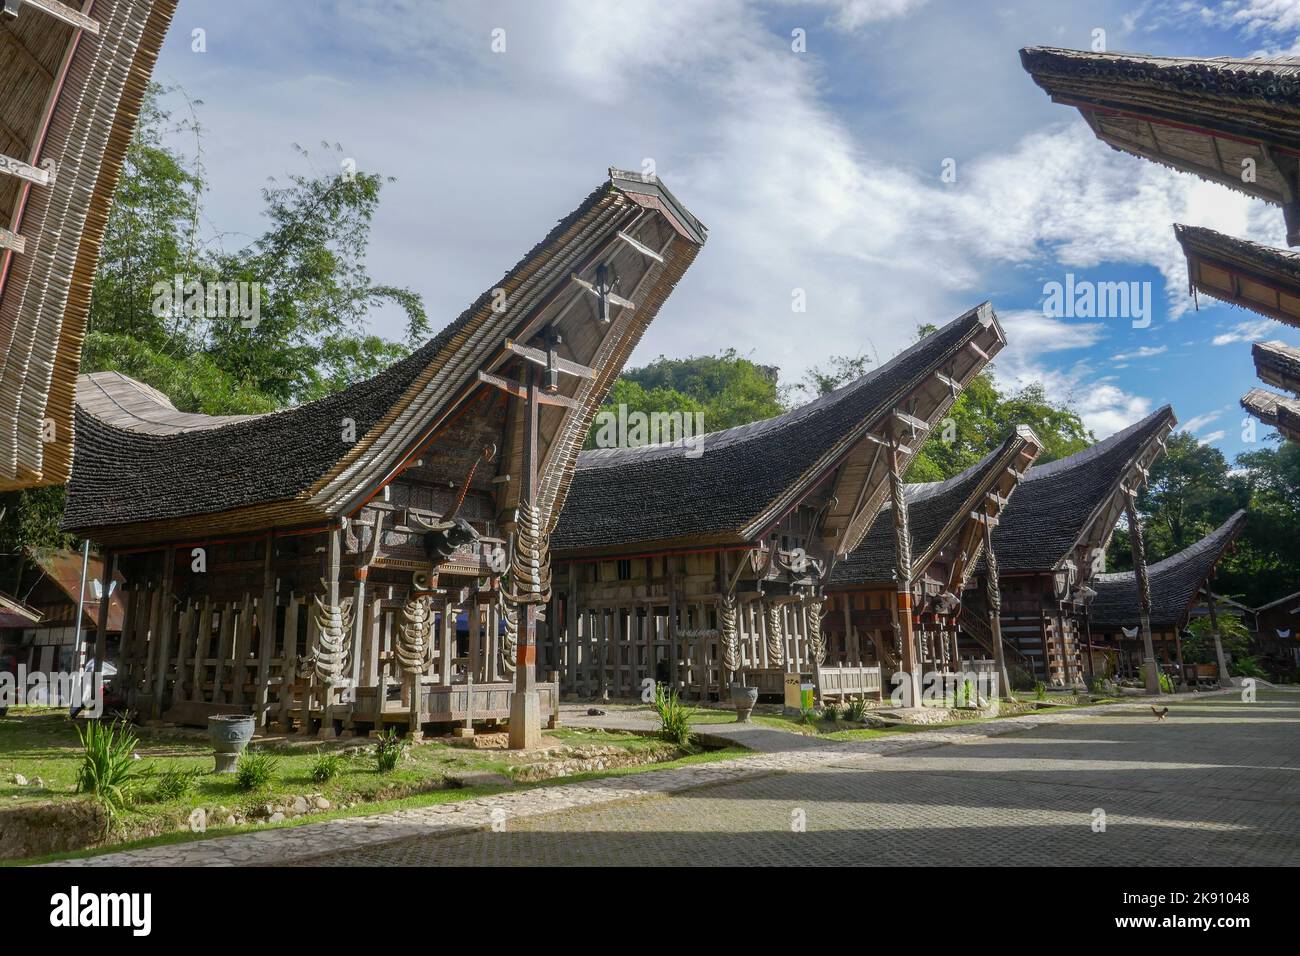 Malerische Reihe von Tongkonan oder traditionellen Häusern in Kete Kesu Dorfstraße, in der Nähe Rantepao, Tana Toraja, Süd-Sulawesi, Indonesien Stockfoto